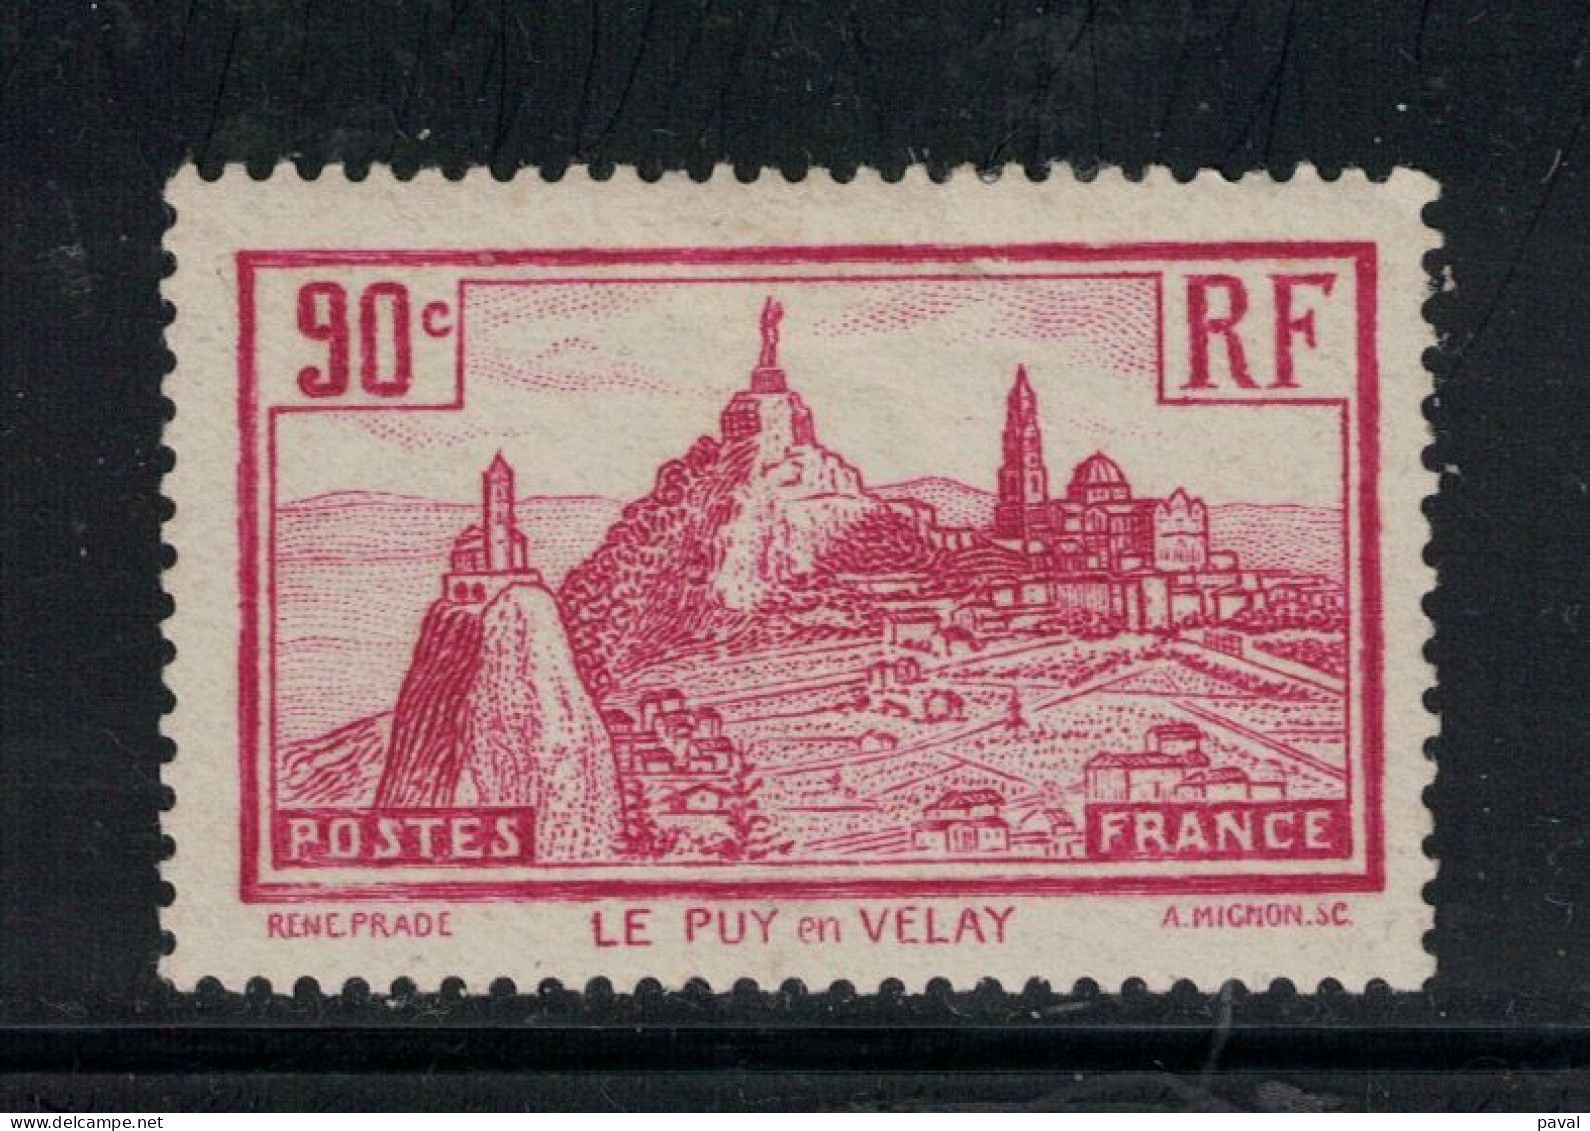 N°290 NEUF¨MH, FRANCE.1933 - Ongebruikt